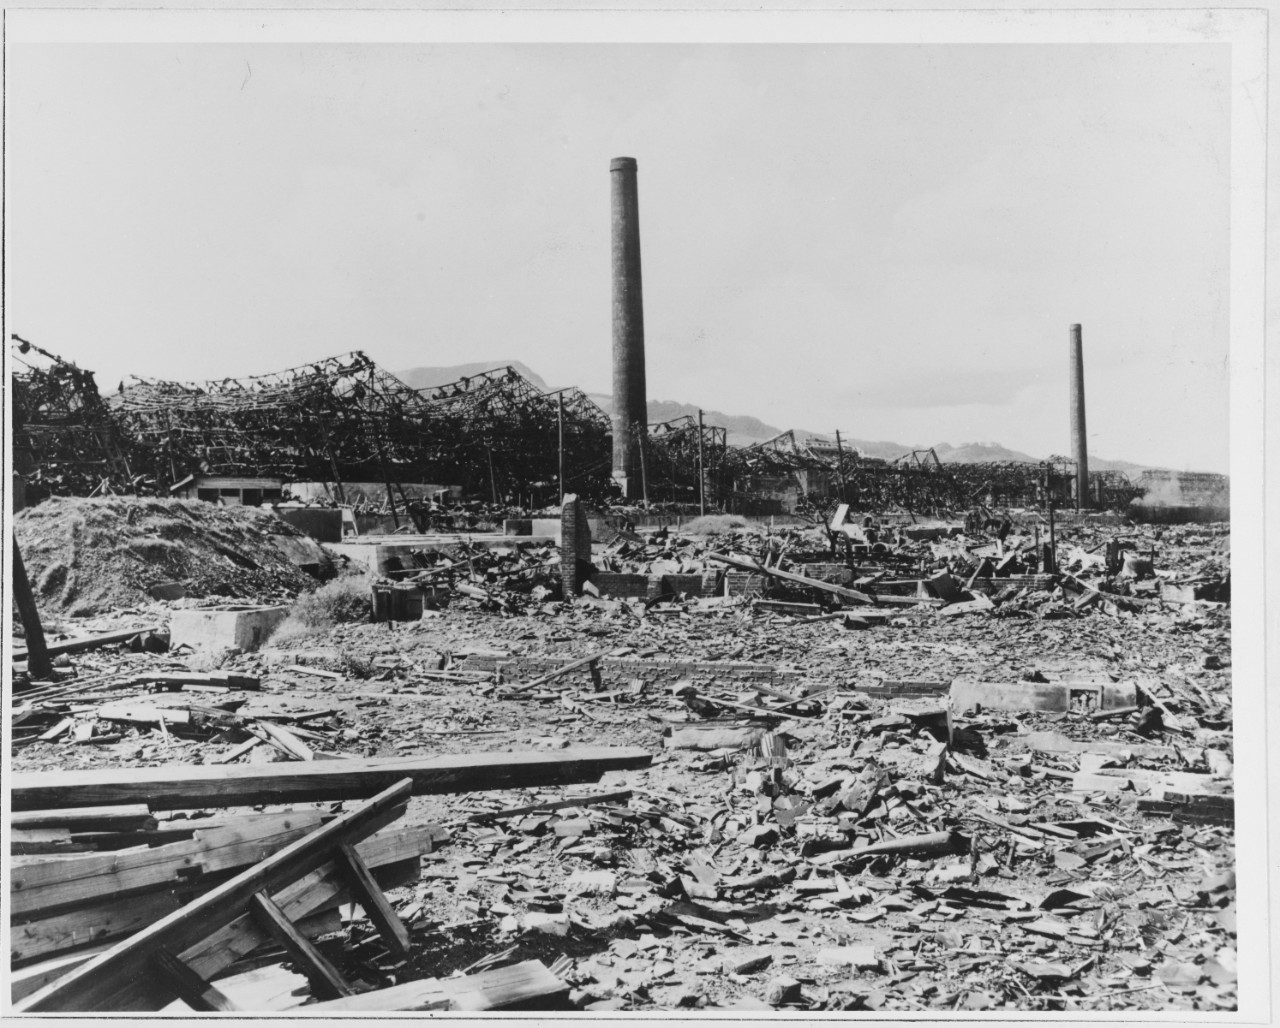 A-bomb damage at Nagasaki, Japan